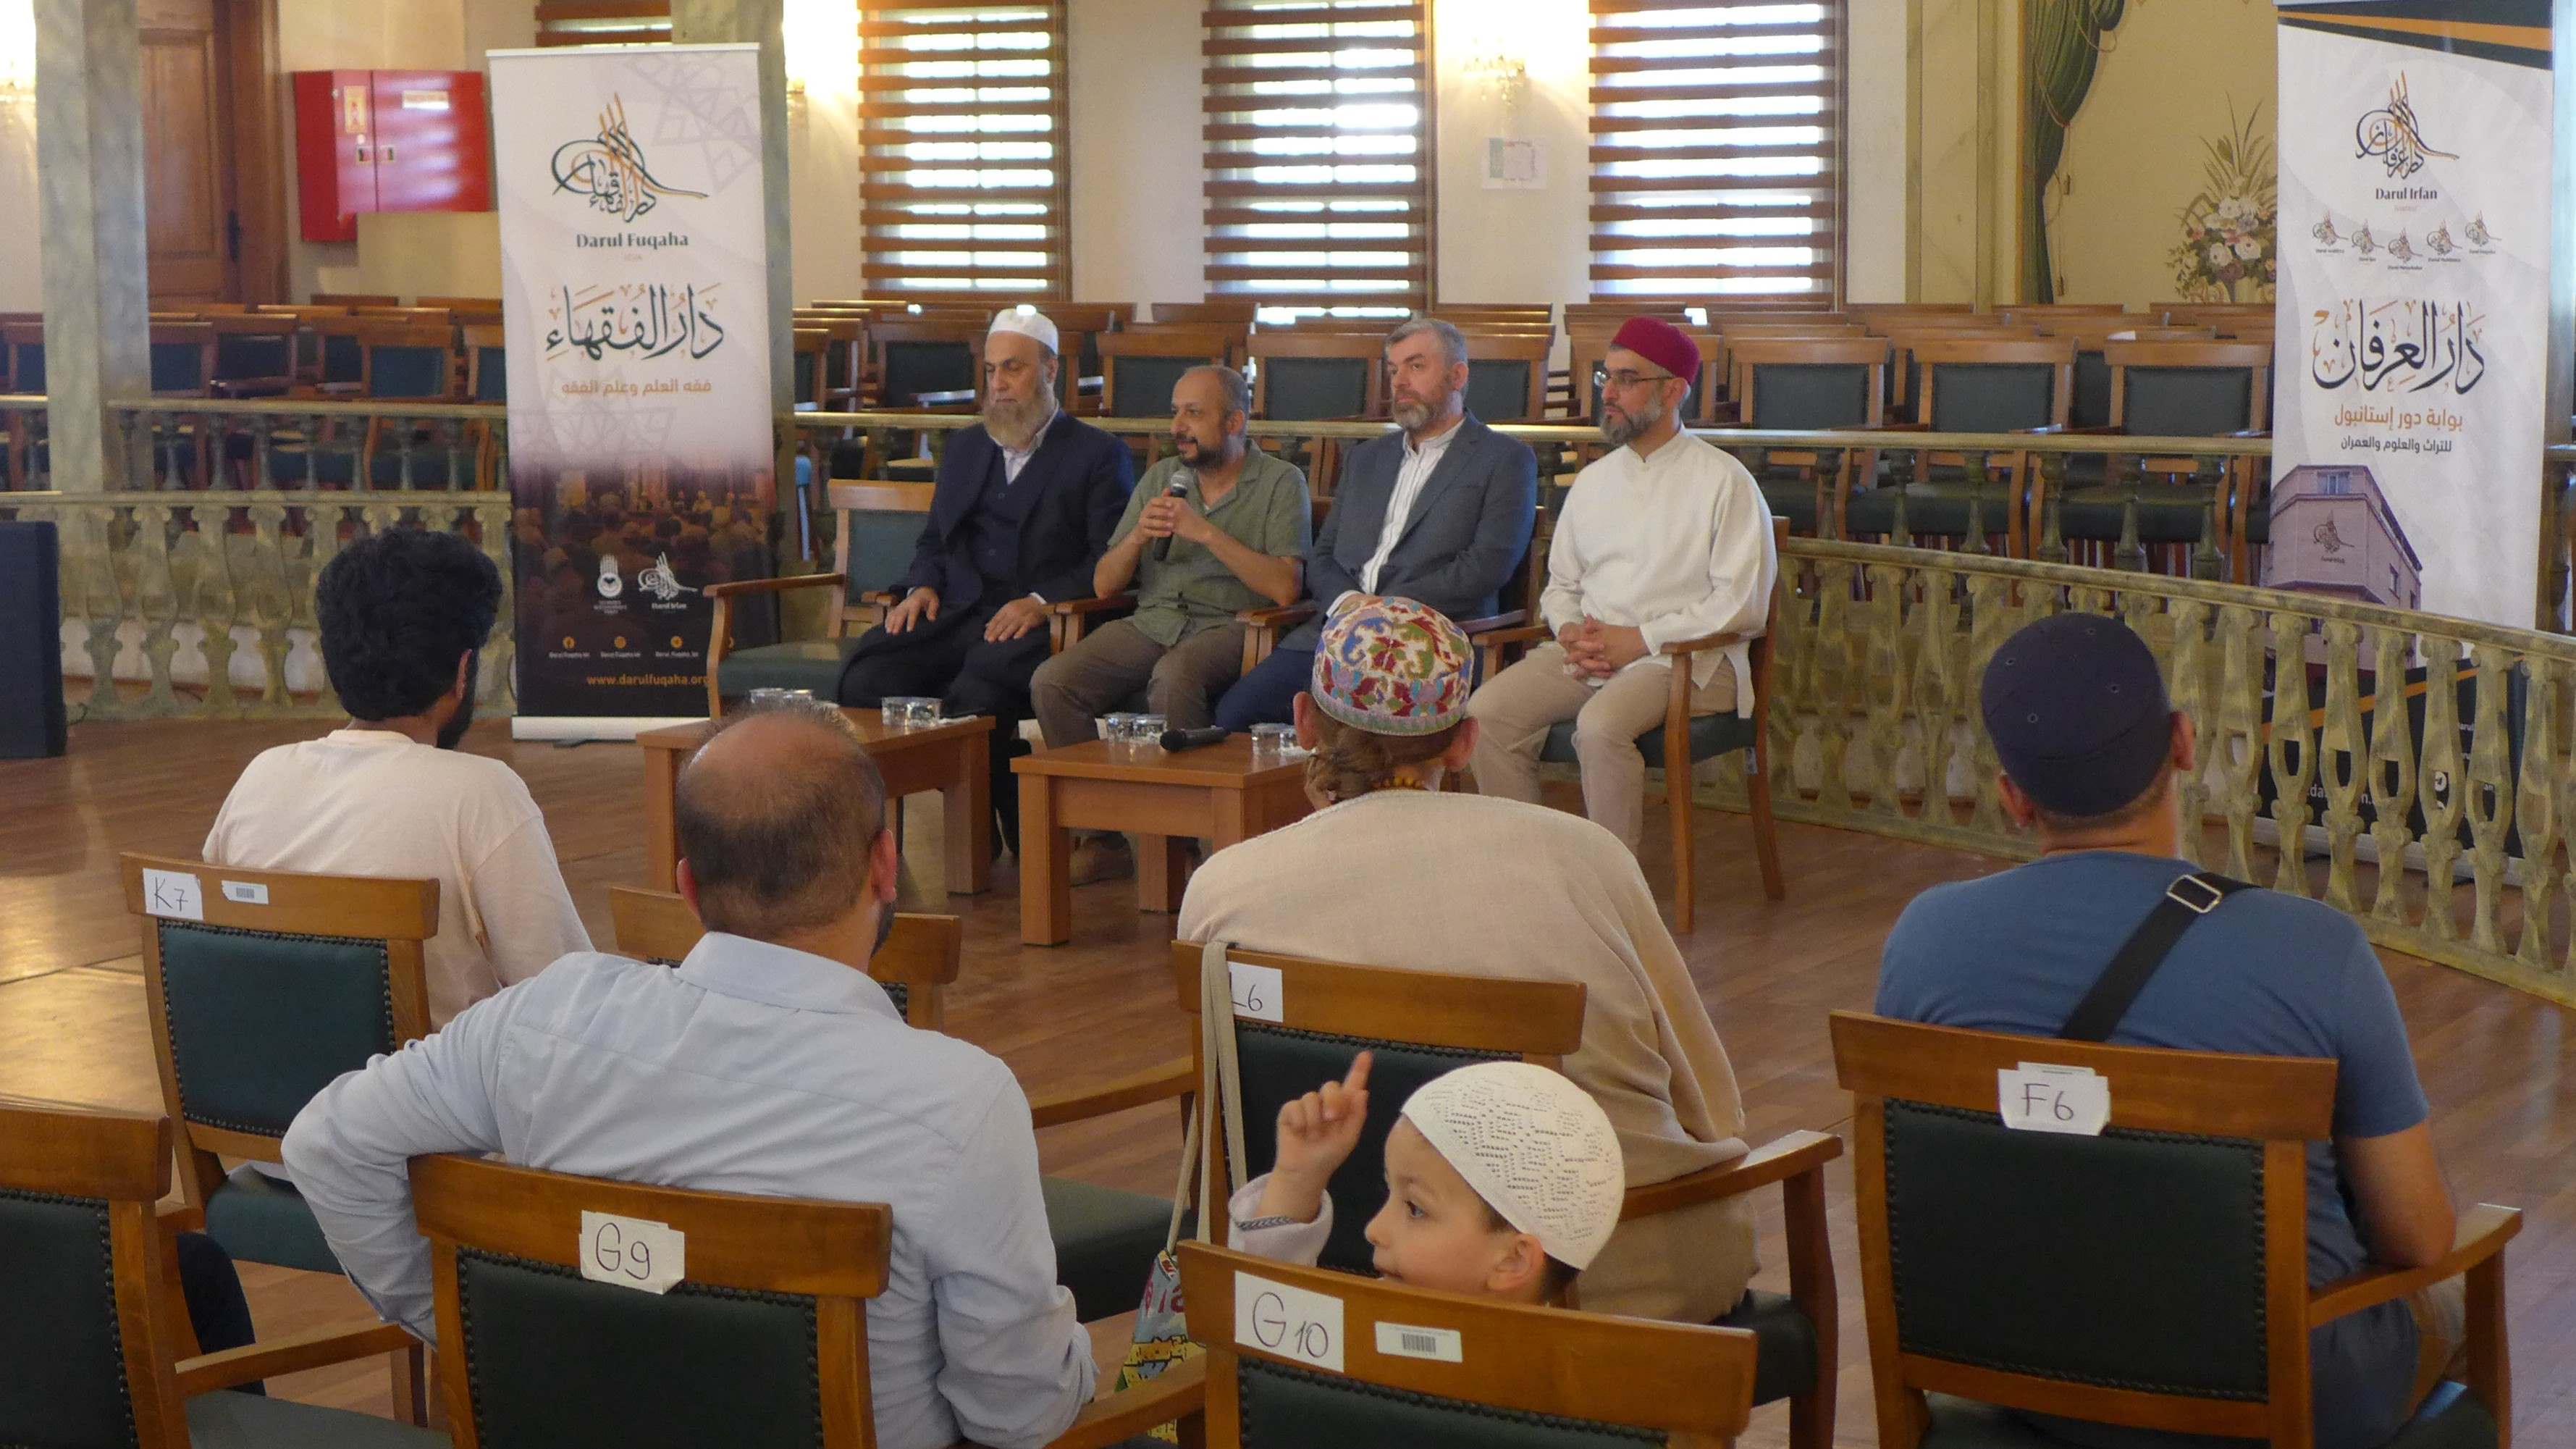 Des érudits islamiques donnent une conférence lors d’un séminaire de Dar al-Fuqaha à Istanbul (MEE/Mehmet Erken)